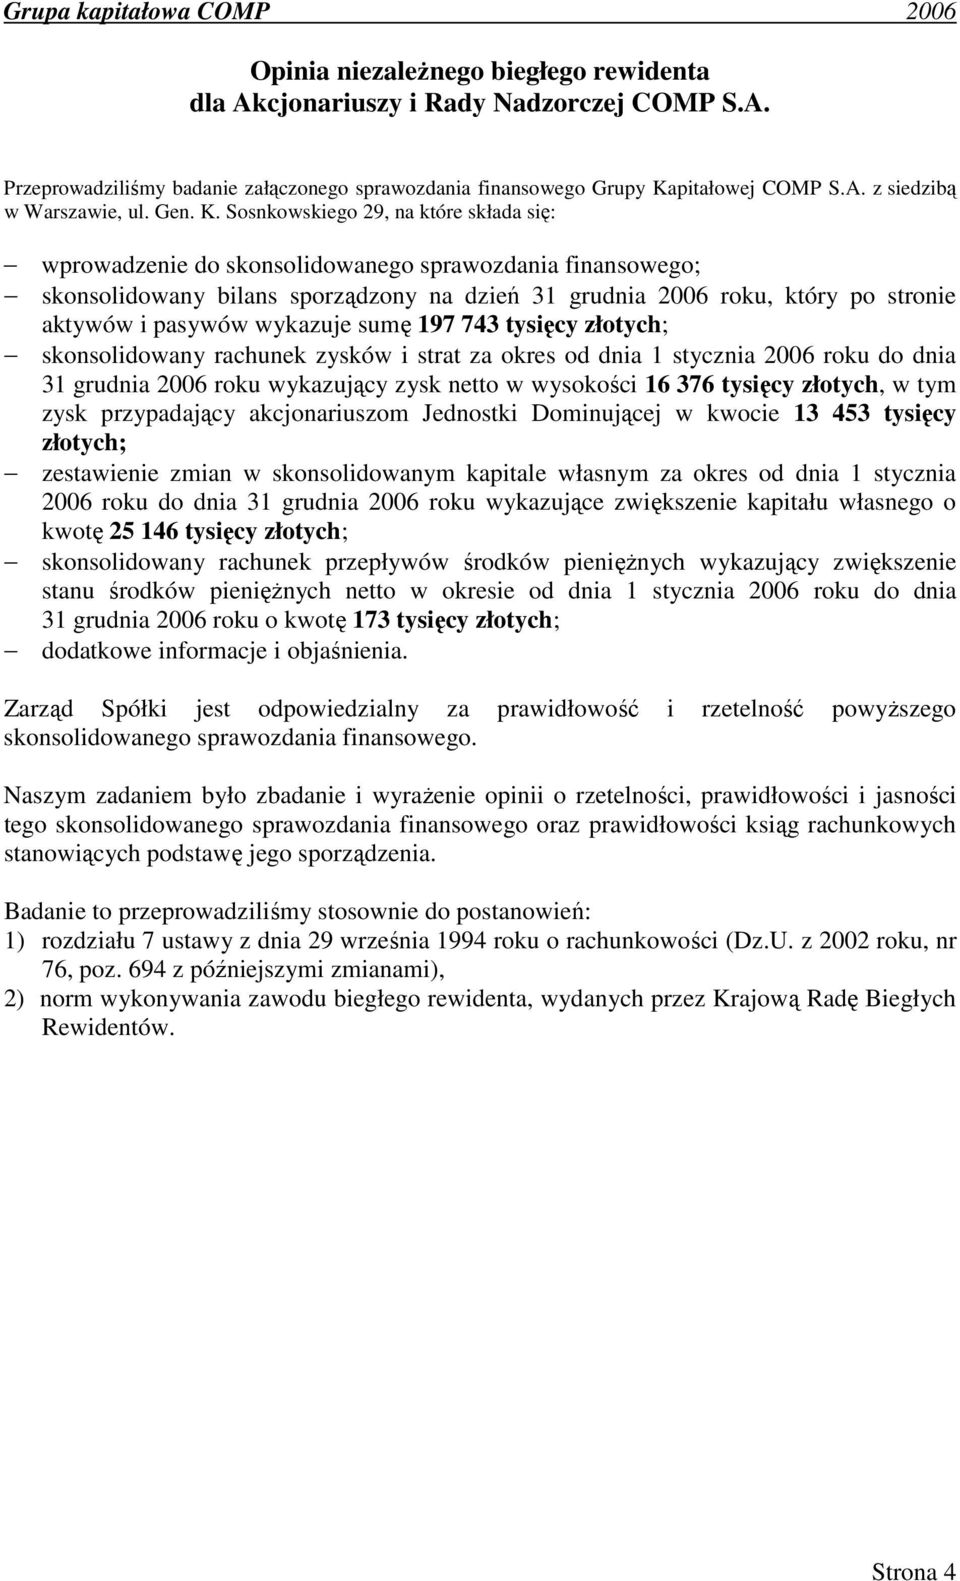 Sosnkowskiego 29, na które składa się: wprowadzenie do skonsolidowanego sprawozdania finansowego; skonsolidowany bilans sporządzony na dzień 31 grudnia 2006 roku, który po stronie aktywów i pasywów